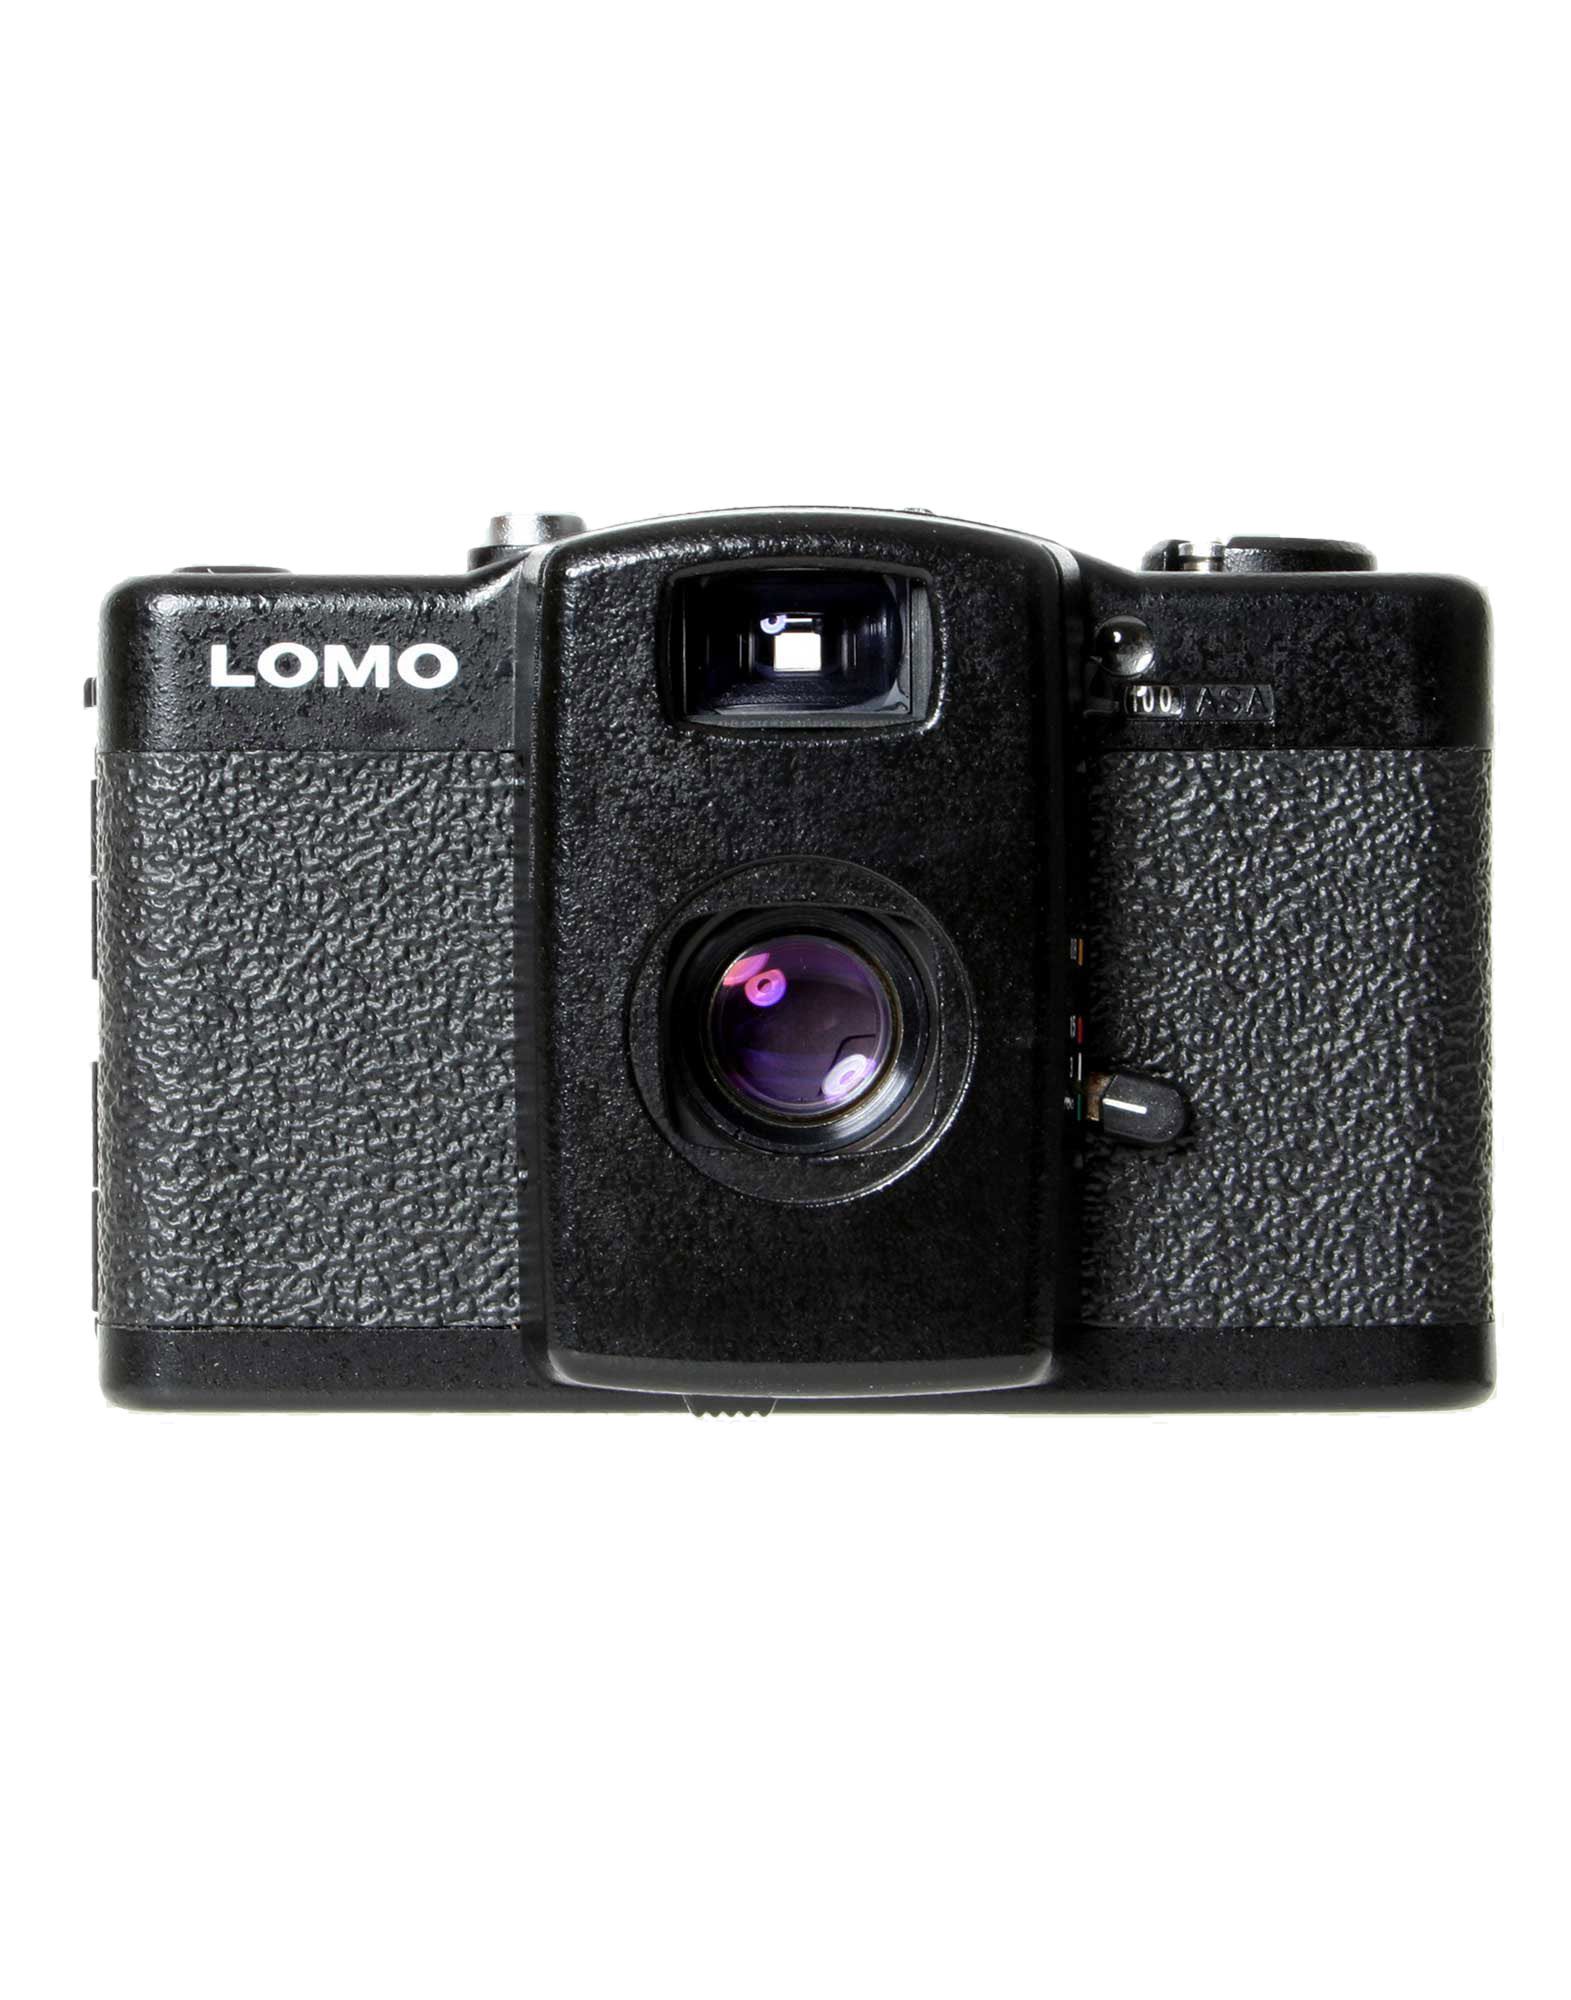 Foto lomography cámaras de fotos
